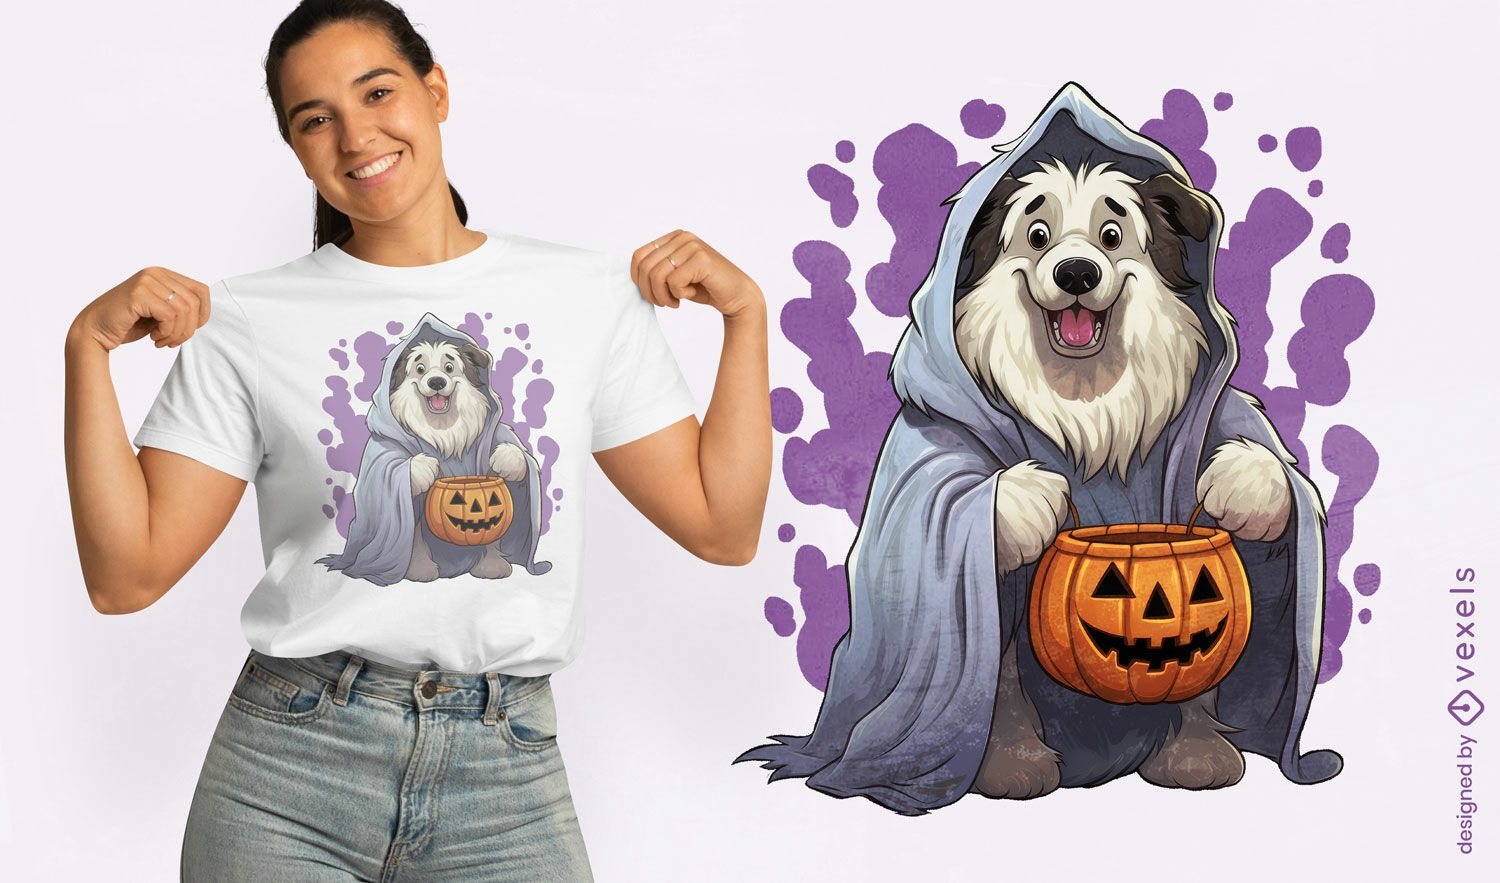 Ddog holding a pumpkin t-shirt design